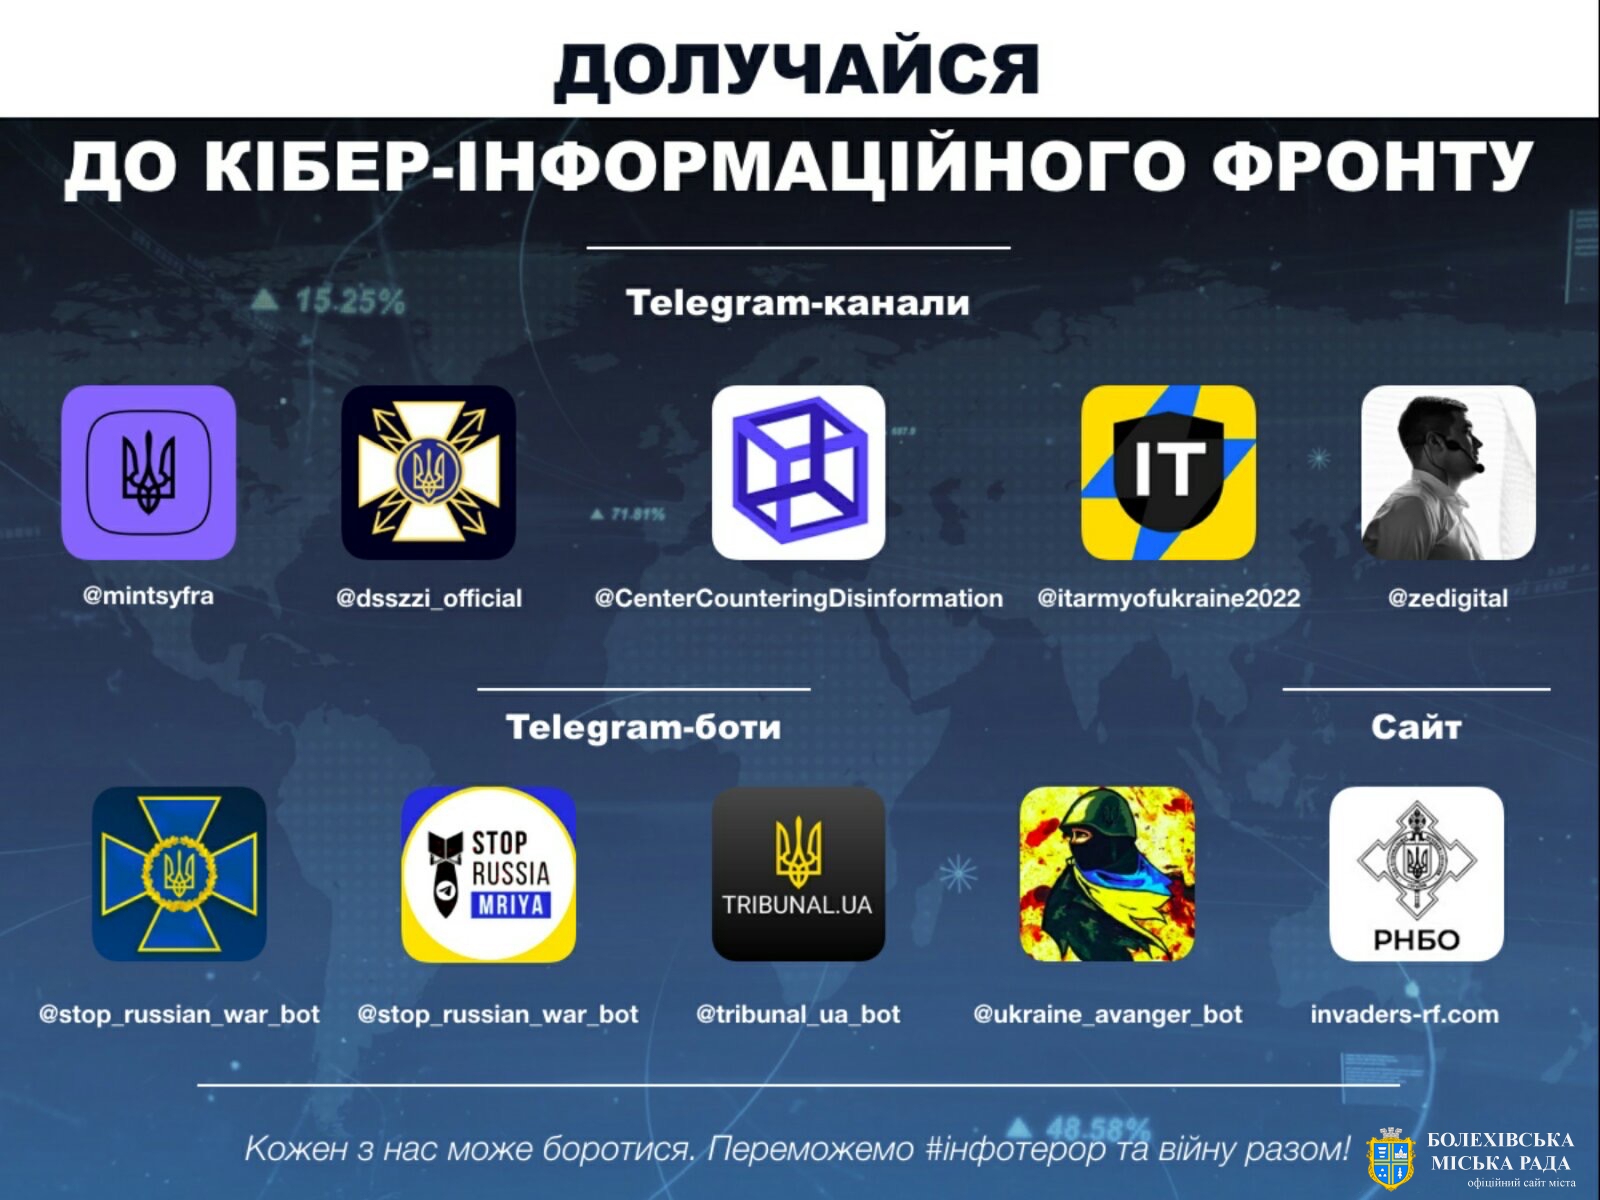 Українці можуть долучитися до боротьби, маючи лише смартфон або ноутбук